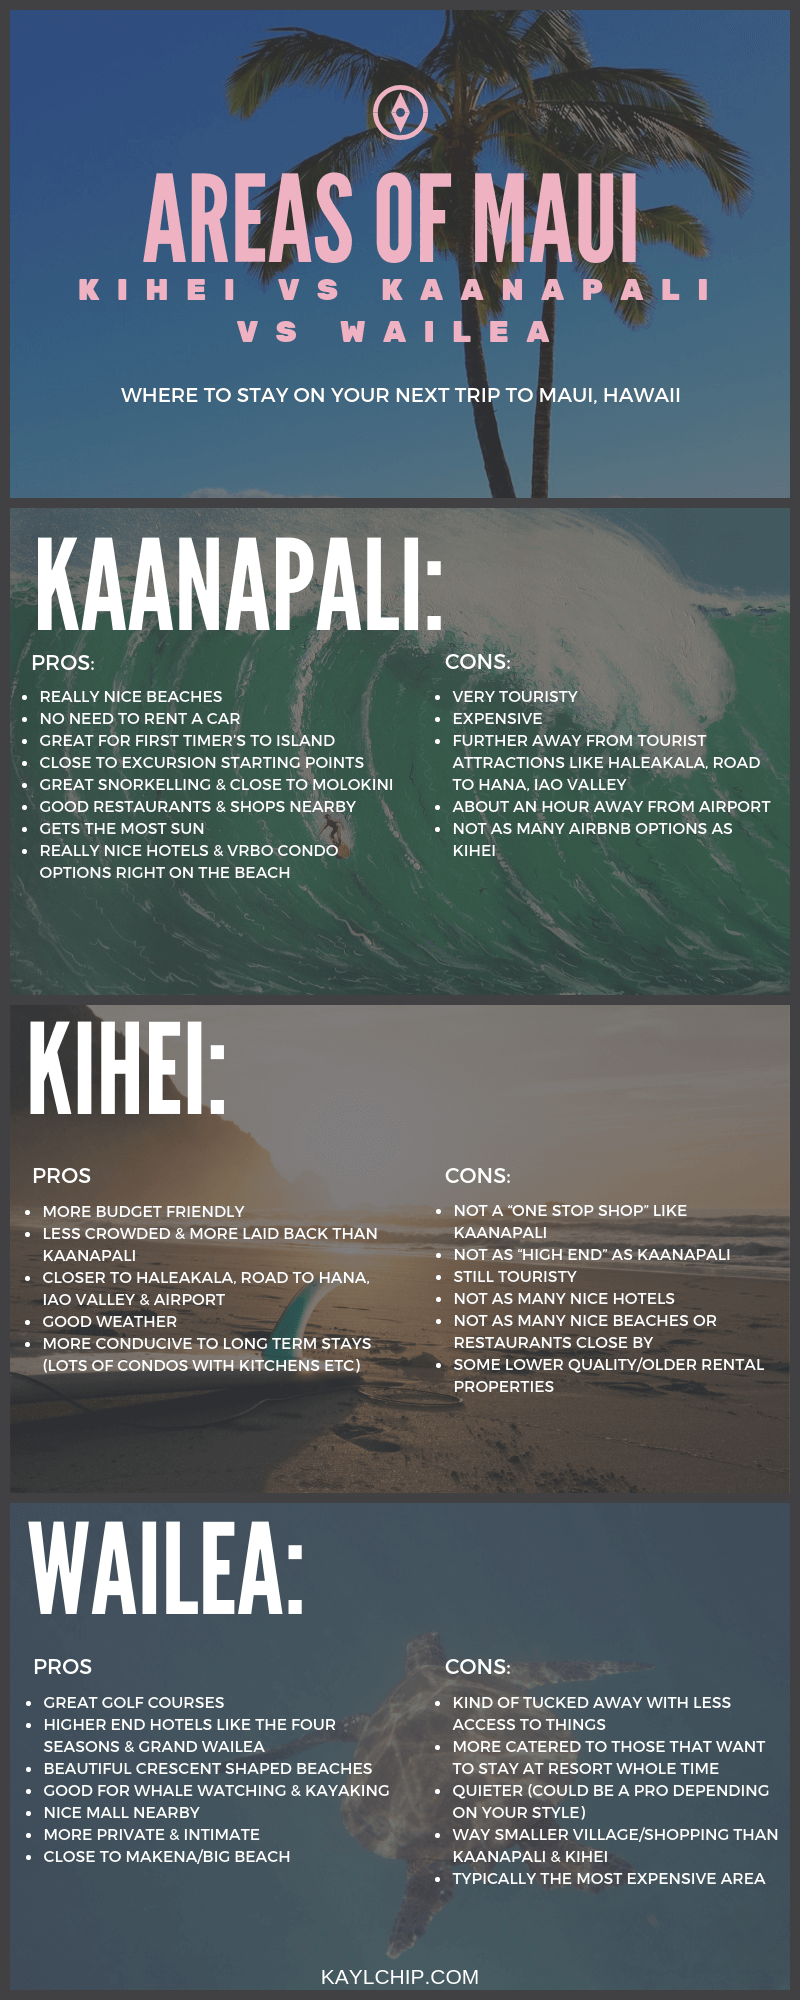 Kaanapali vs Kihei vs Wailea - Areas of Maui Compared